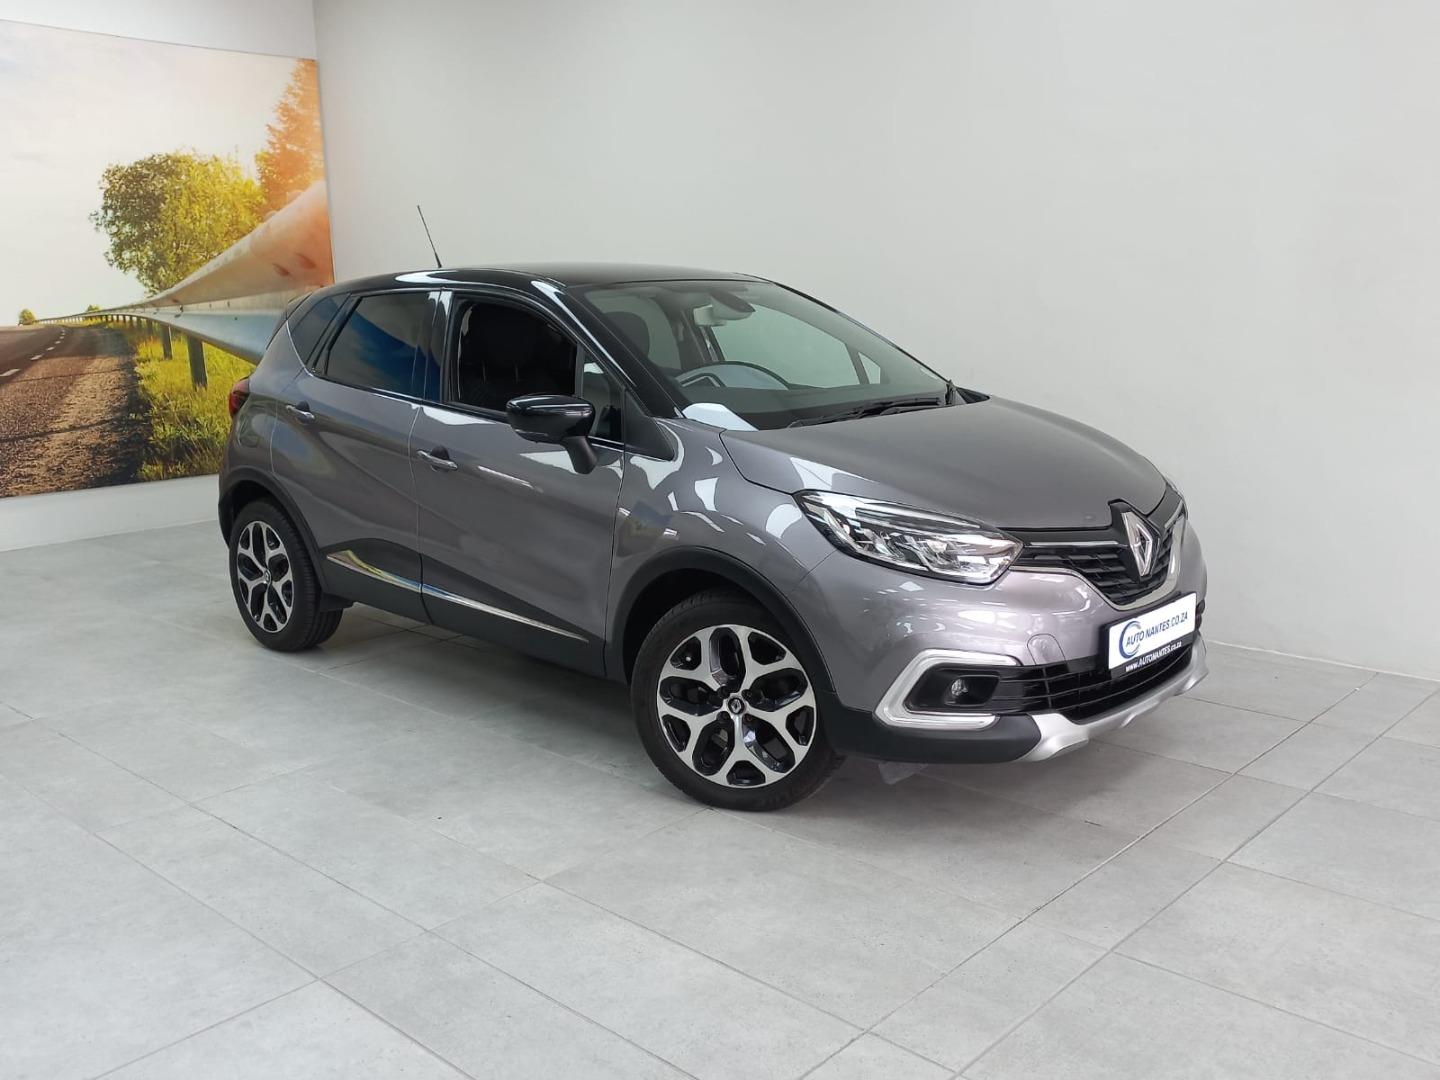 2018 Renault Captur 66kW dCi Dynamique For Sale